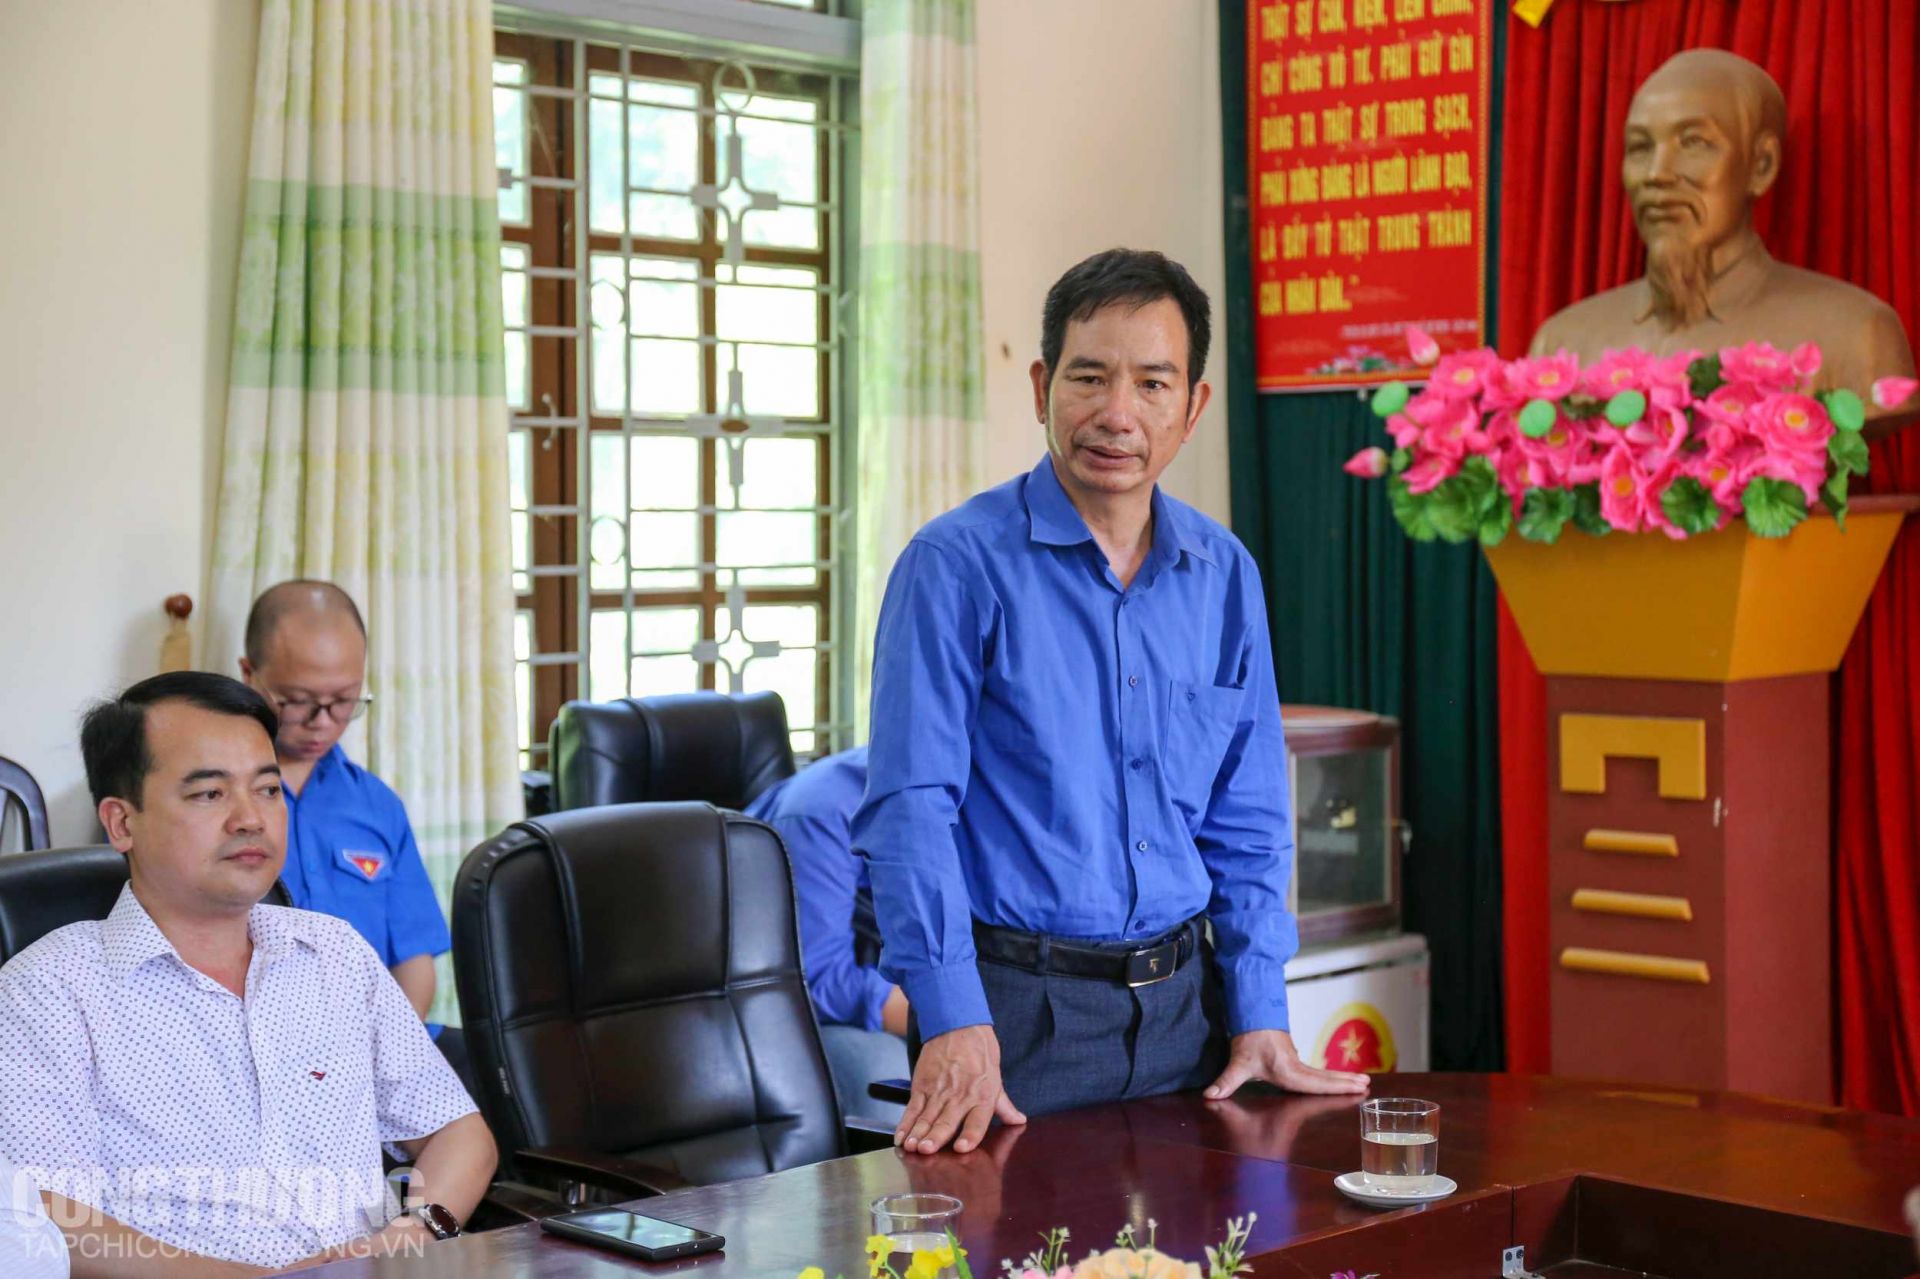 Đồng chí Nguyễn Đình Phong - Ủy viên Ban Thường vụ, Phó Giám đốc Sở Công Thương Sơn La